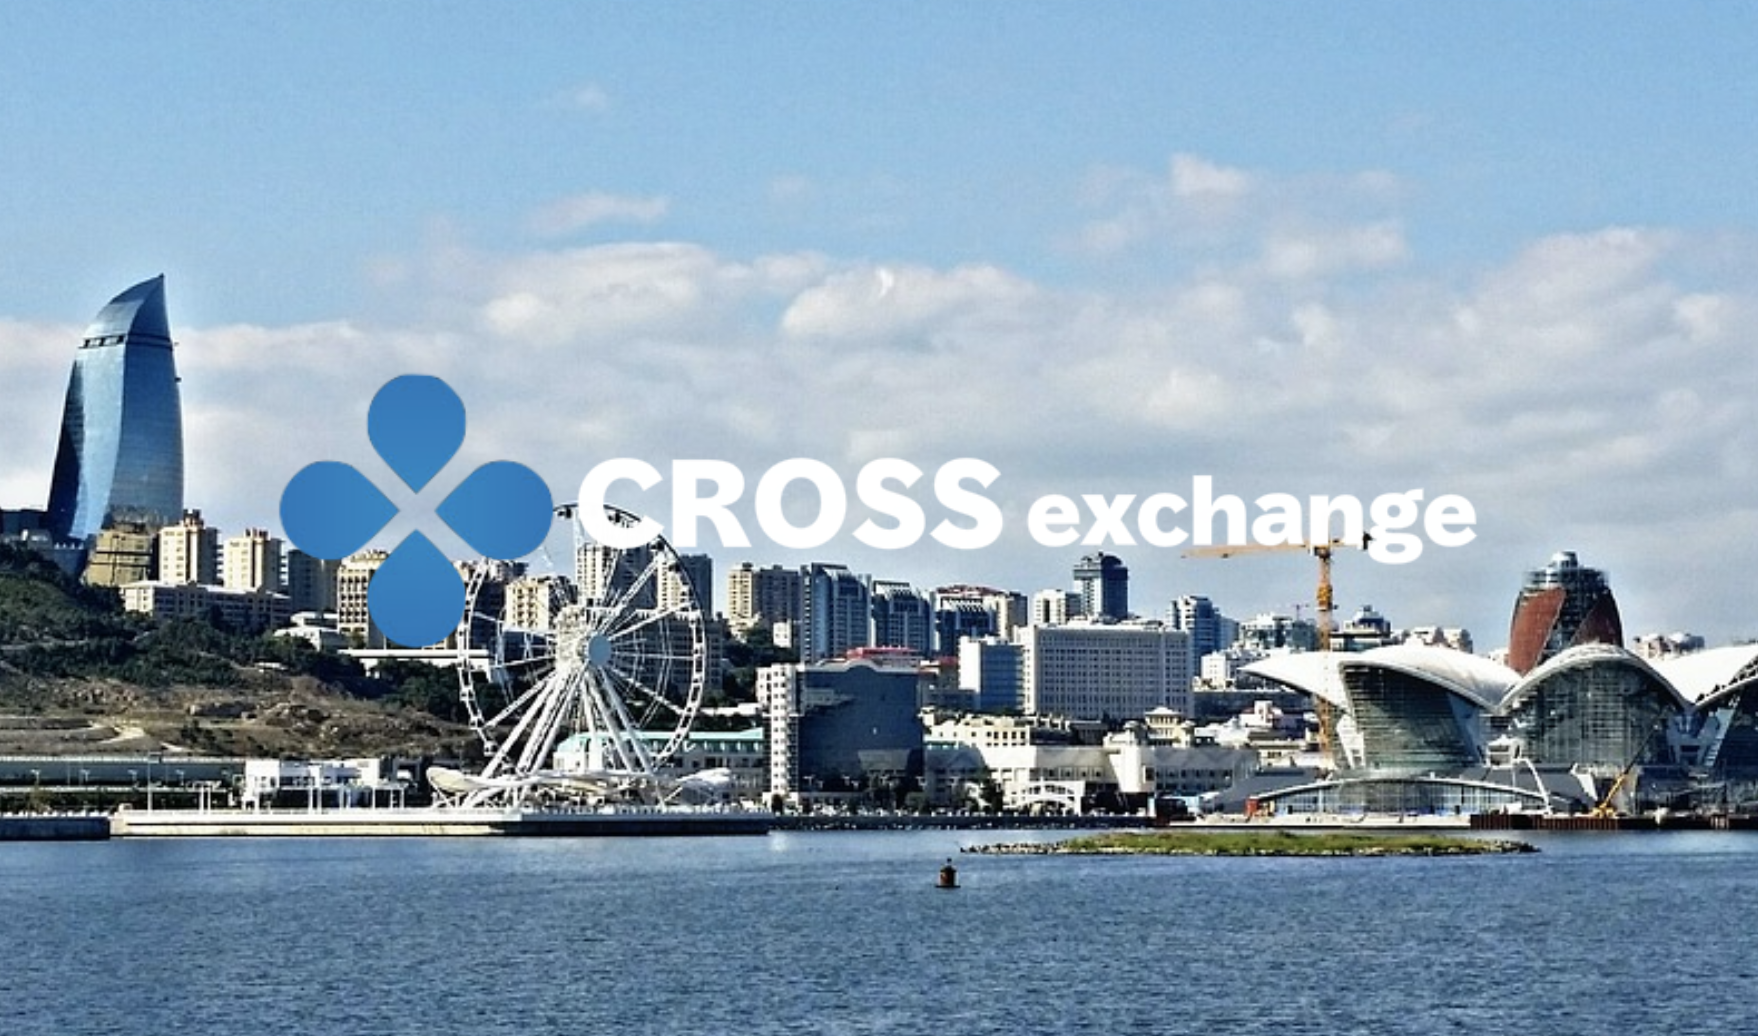 クロスエクスチェンジ（CROSSexchange）をロシアに向けて訴求する理由